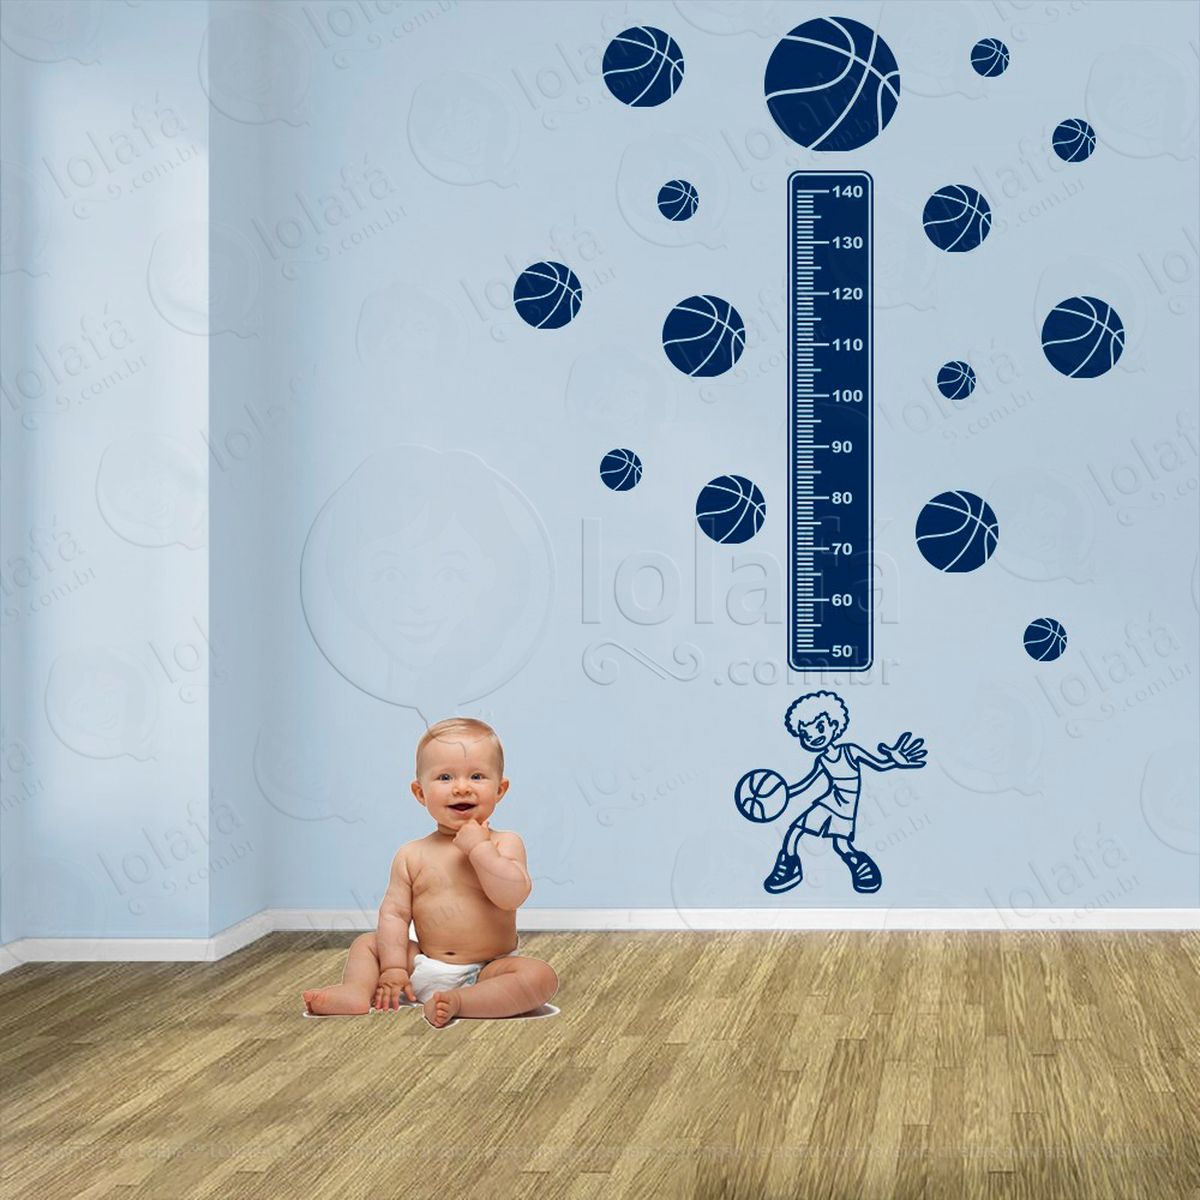 basquetebol e bolas de basquete adesivo régua de crescimento infantil, medidor de altura para quarto, porta e parede - mod:251